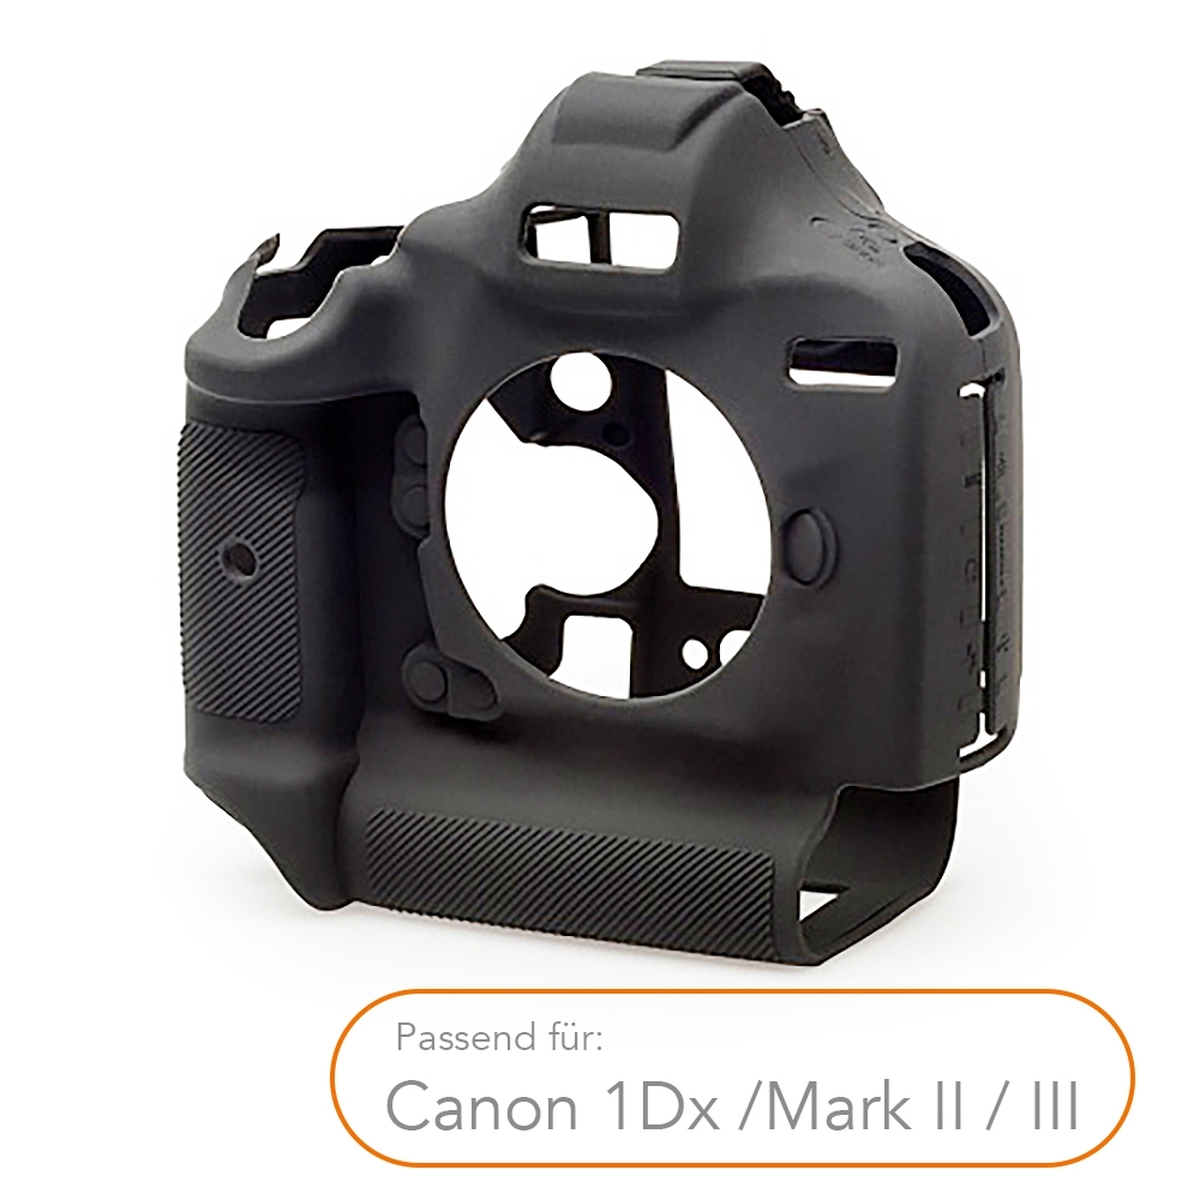 Walimex pro easyCover voor Canon 1Dx /Mark II / III